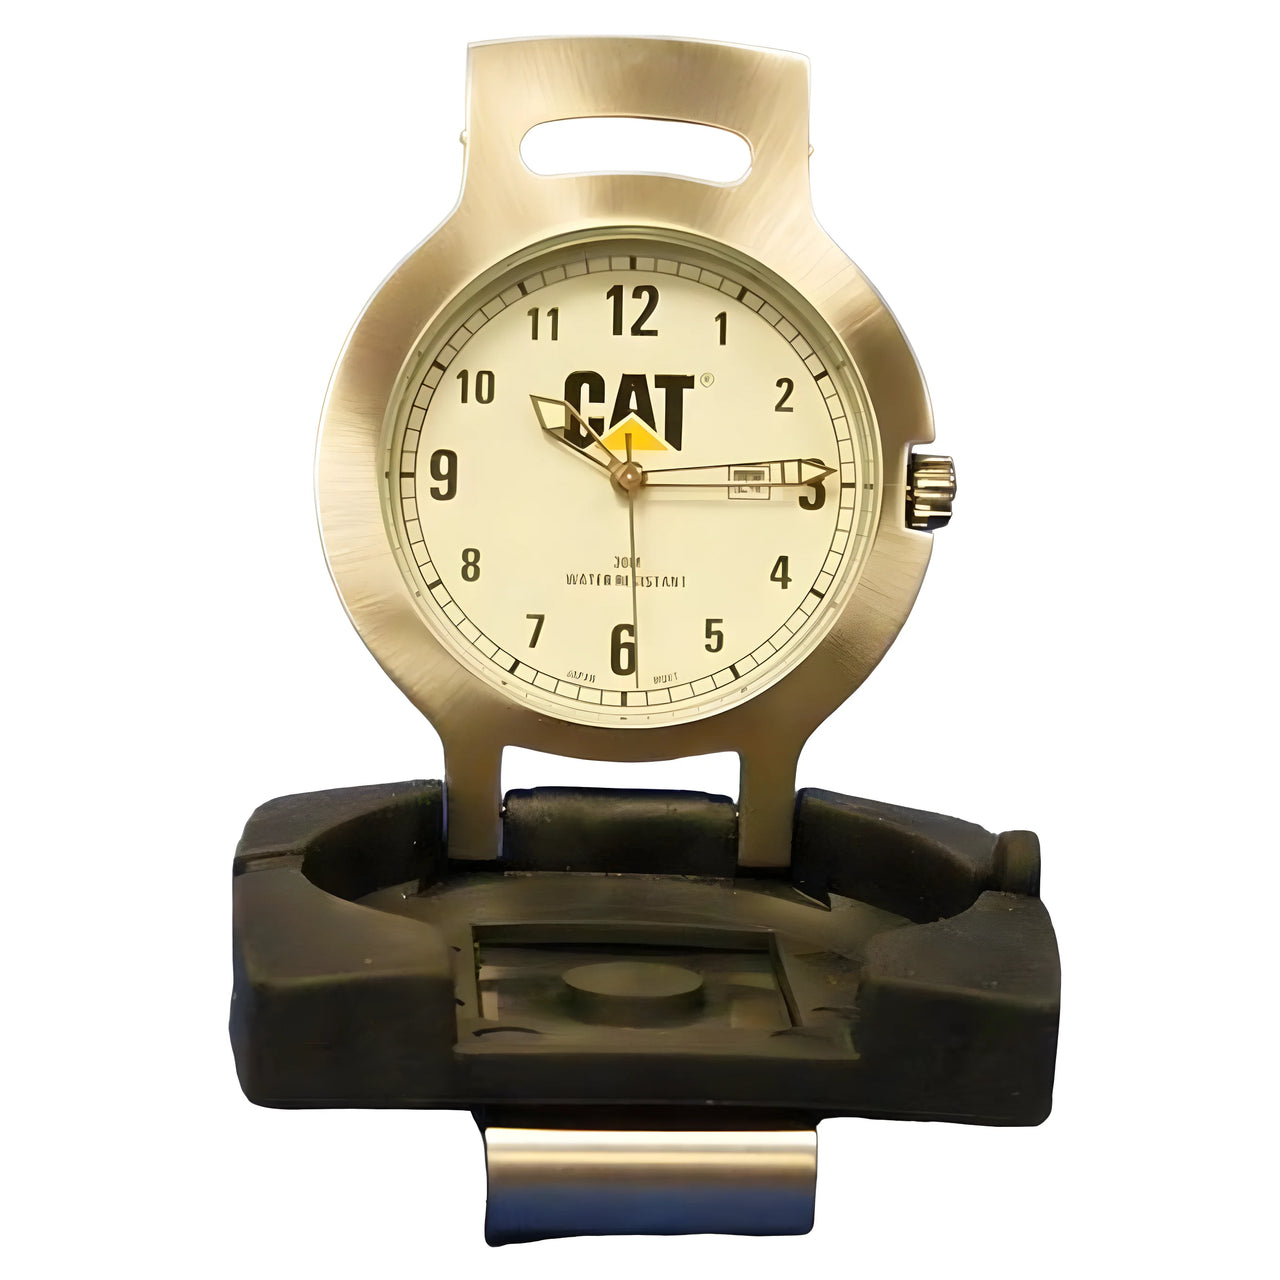 CCMWAT Caterpillar Watch (Discontinued Model)